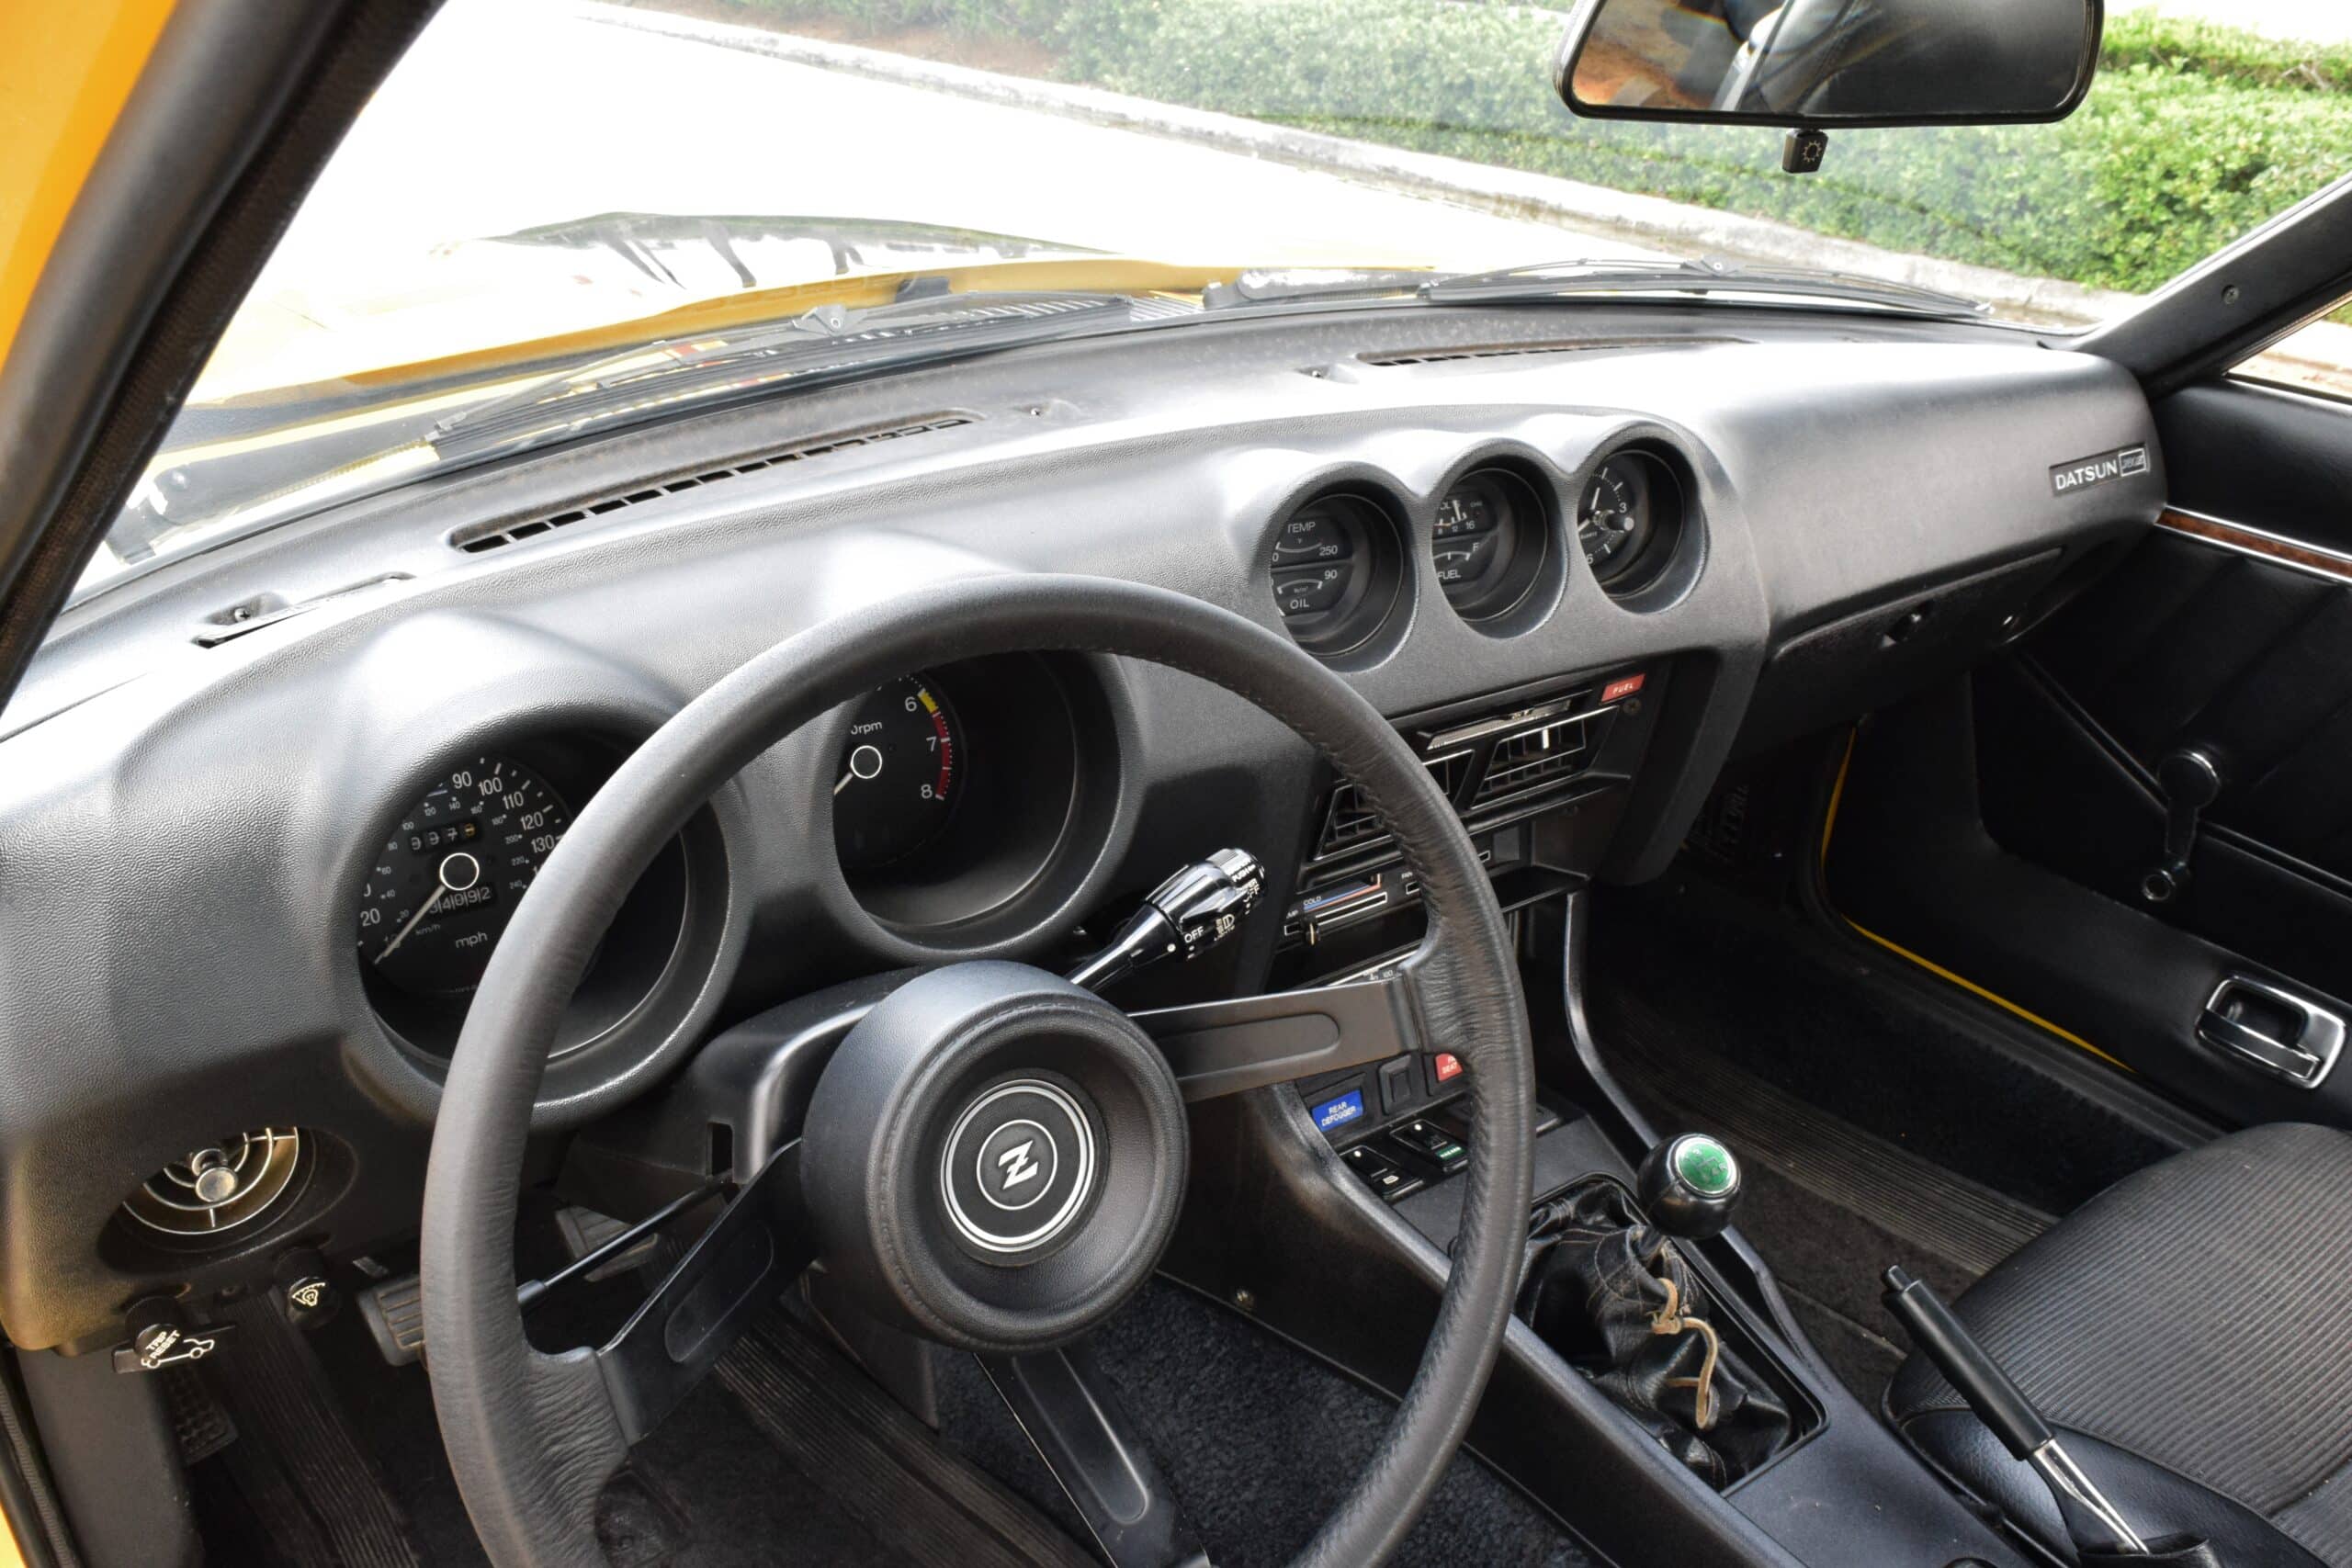 1978 Datsun 280Z 42 YEAR OLD TIME MACHINE GARAGE FIND -1 OWNER – 34,000 ACTUAL MILES – SURVIVOR –